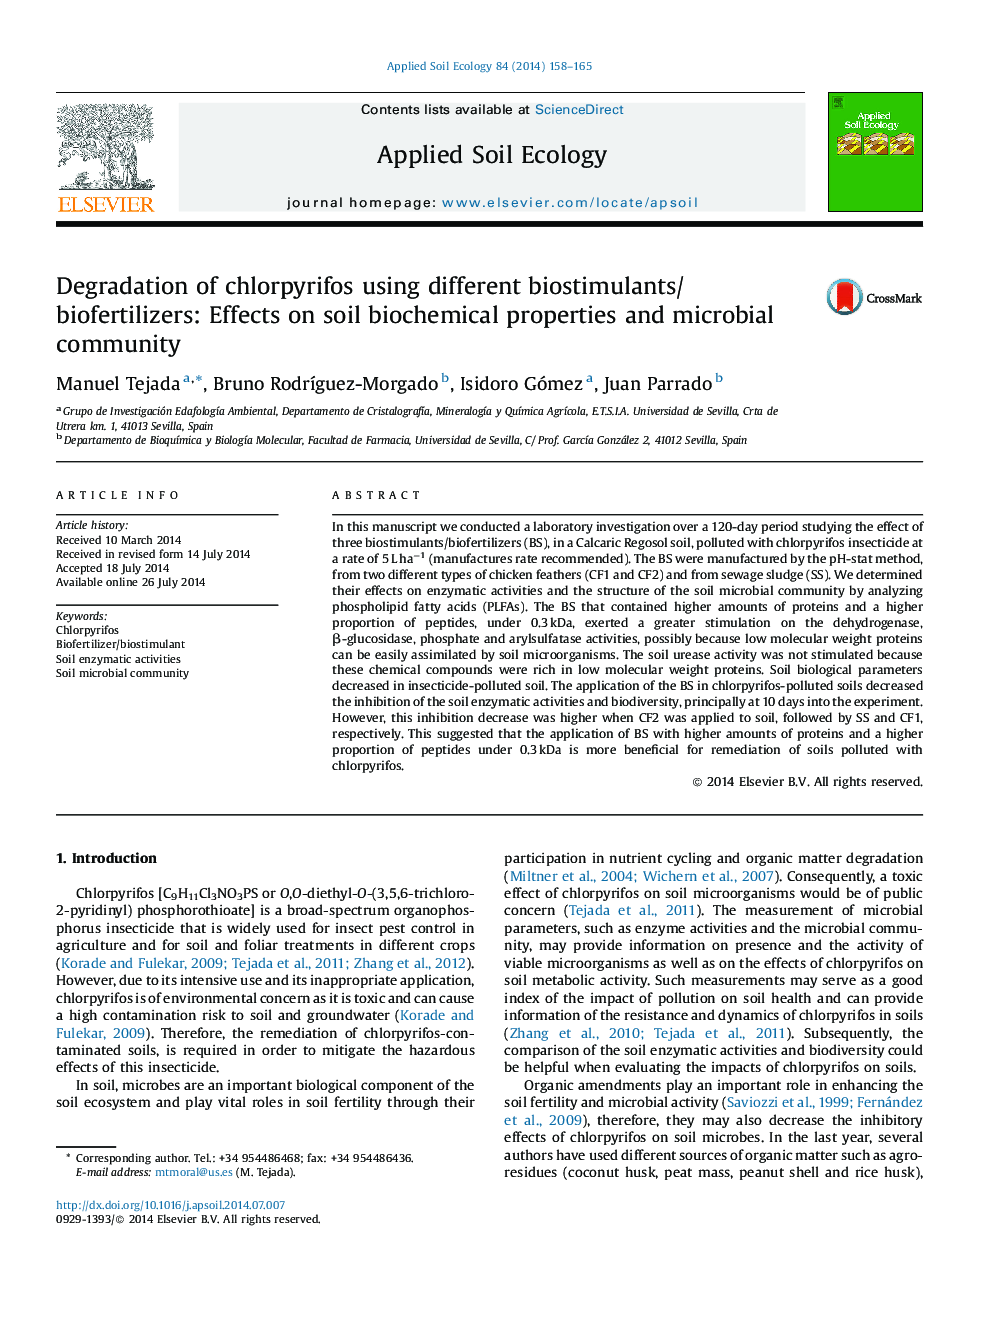 تجزیه کلرپیریفوس با استفاده از متفورمین / بیوفیزیک های مختلف: اثرات خواص بیوشیمی خاک و جامعه میکروبی 